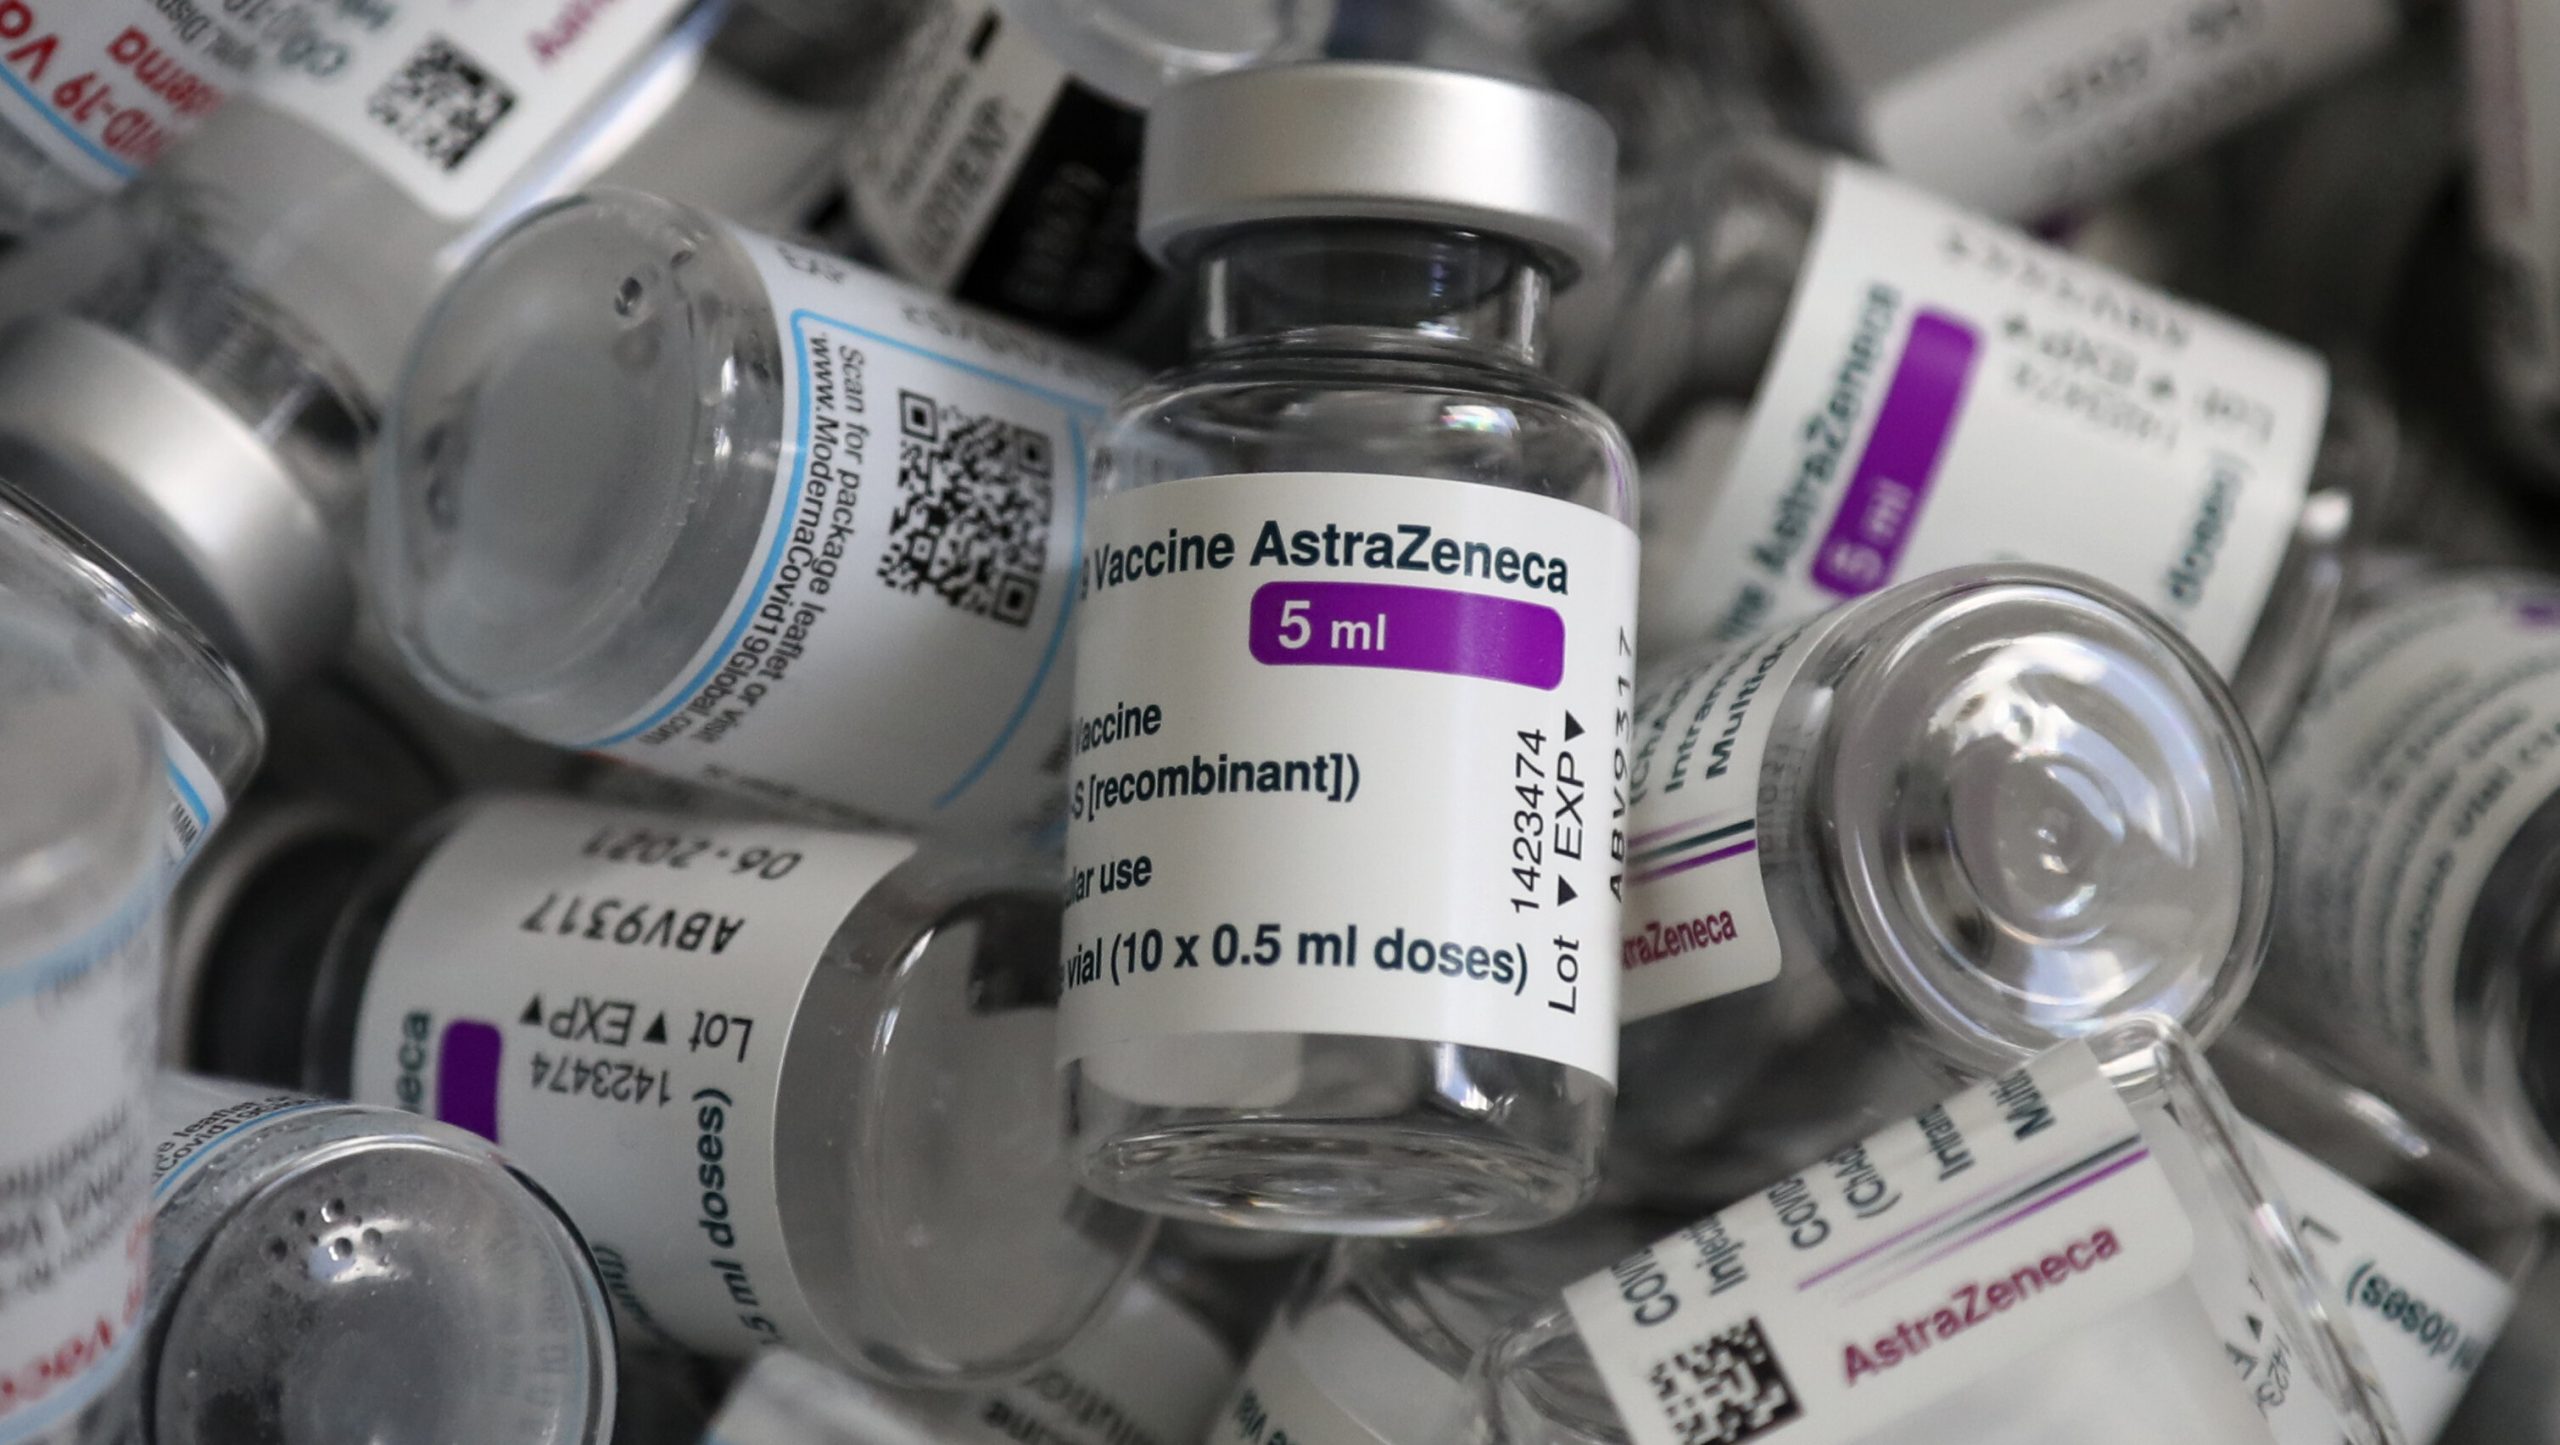 Franța raportează 4 noi cazuri de tromboze apărute după administrarea vaccinului AstraZeneca. Doi pacienți au decedat